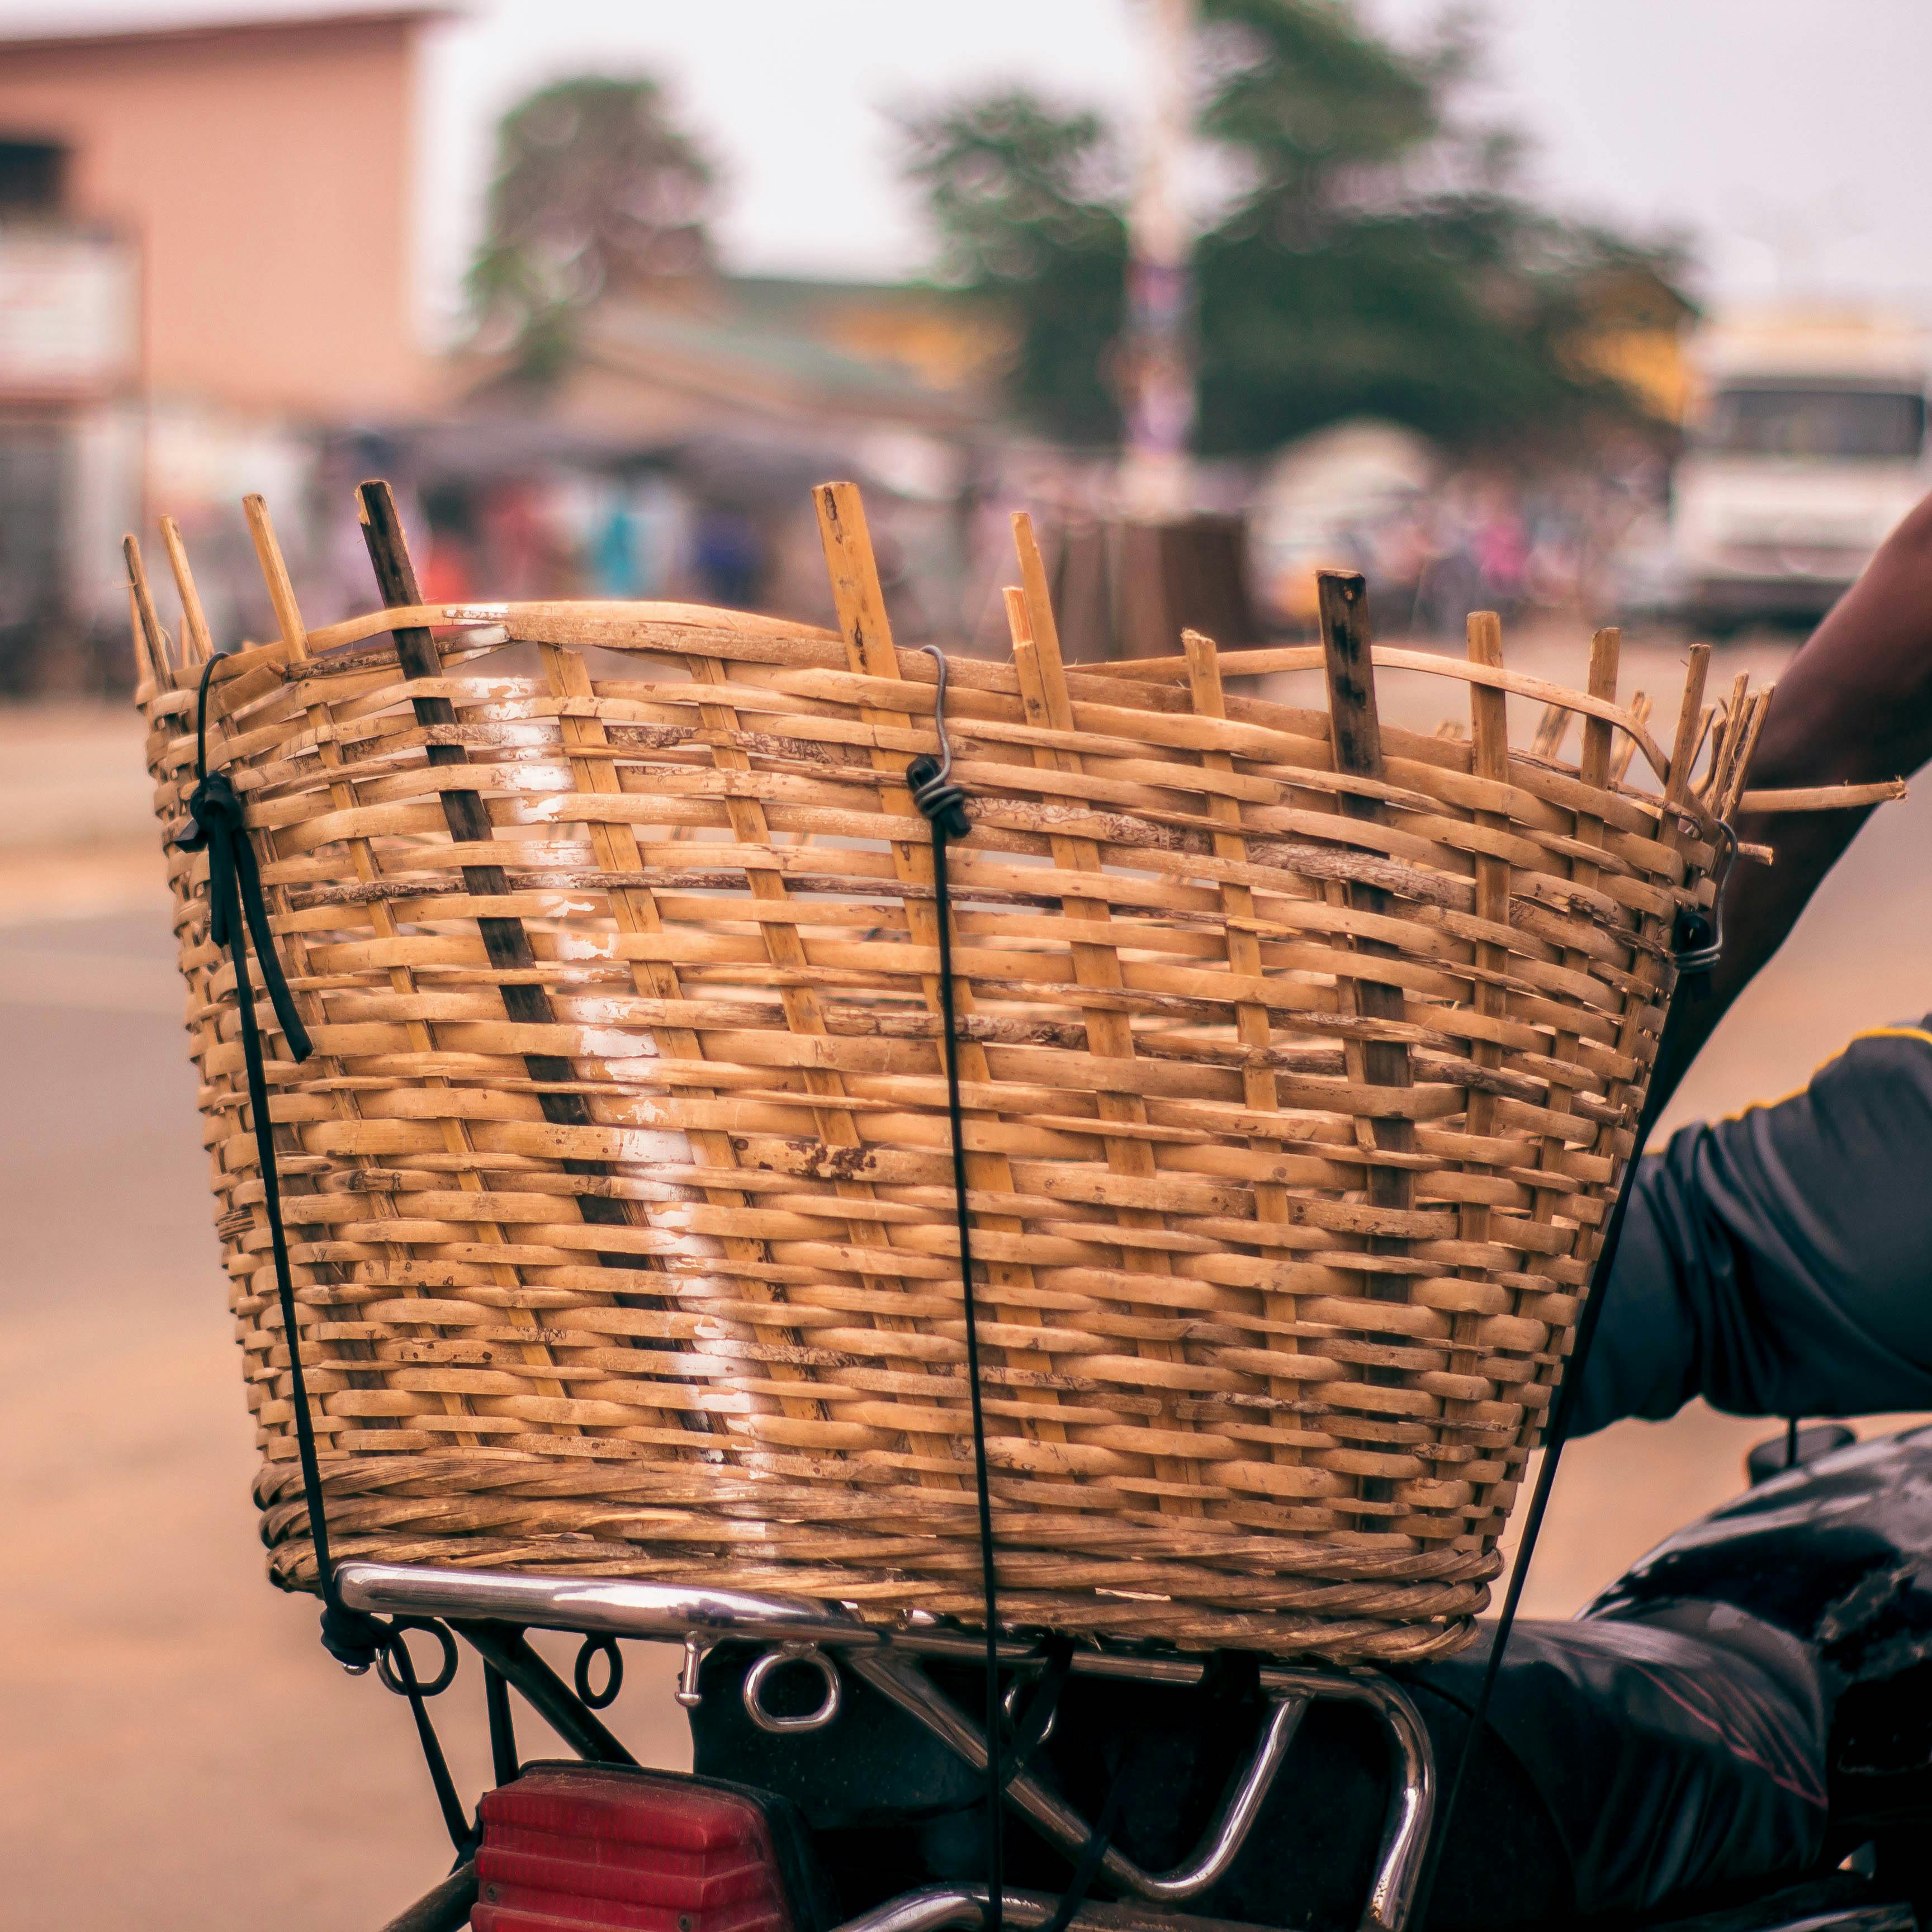 Free stock photo of basket, motor bike, street